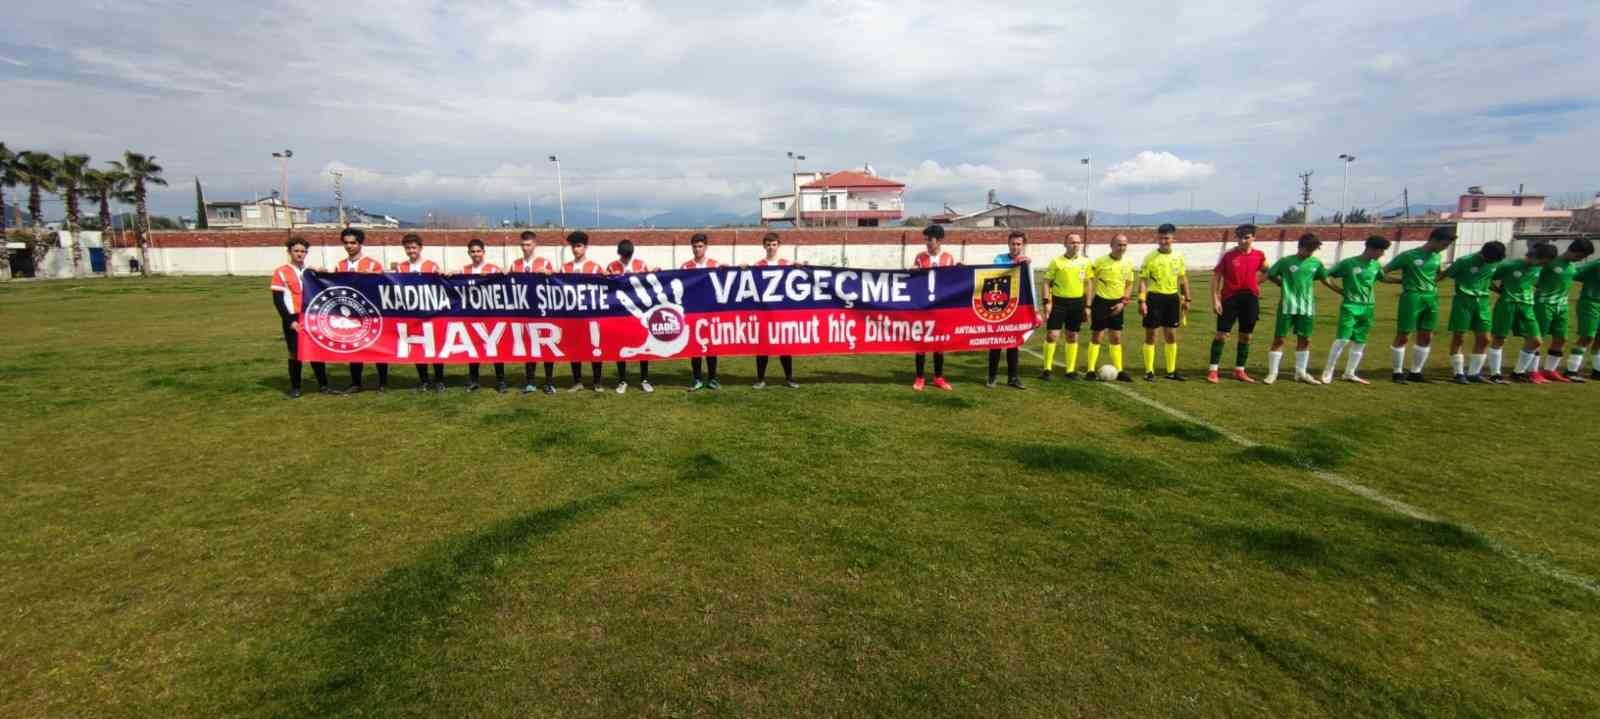 Futbol maçında jandarmadan ‘Kadına şiddete hayır’ pankartı